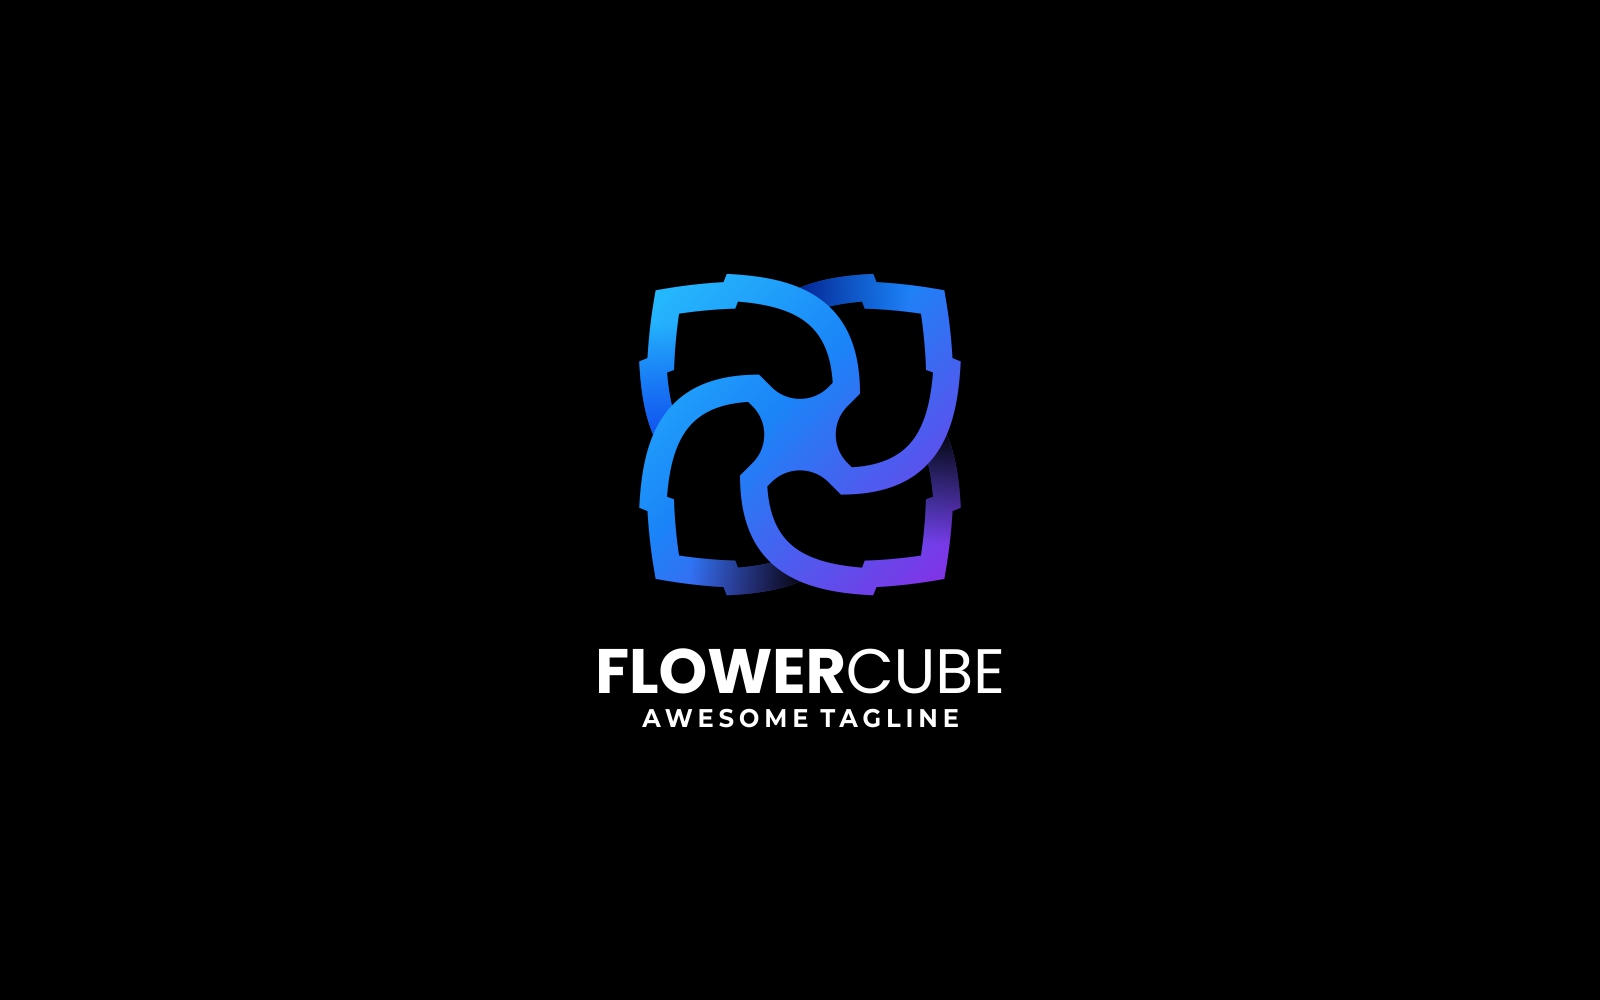 Flower Cube Line Art Logo